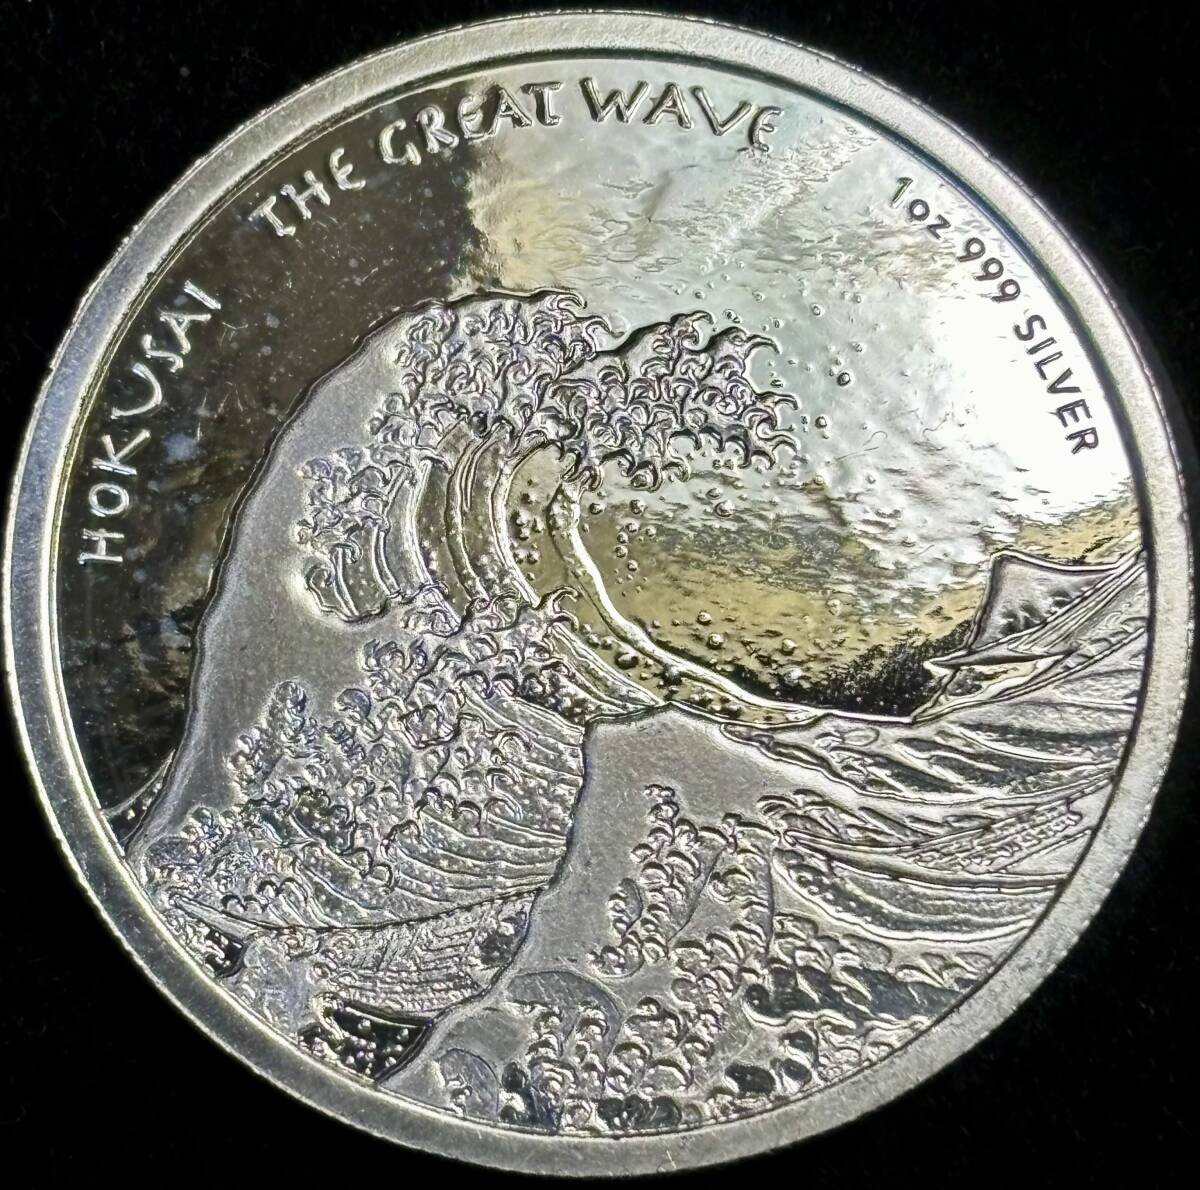 【フィジー大型銀貨】(1オンス純銀 2017年 直径39mm プルーフ)の画像1